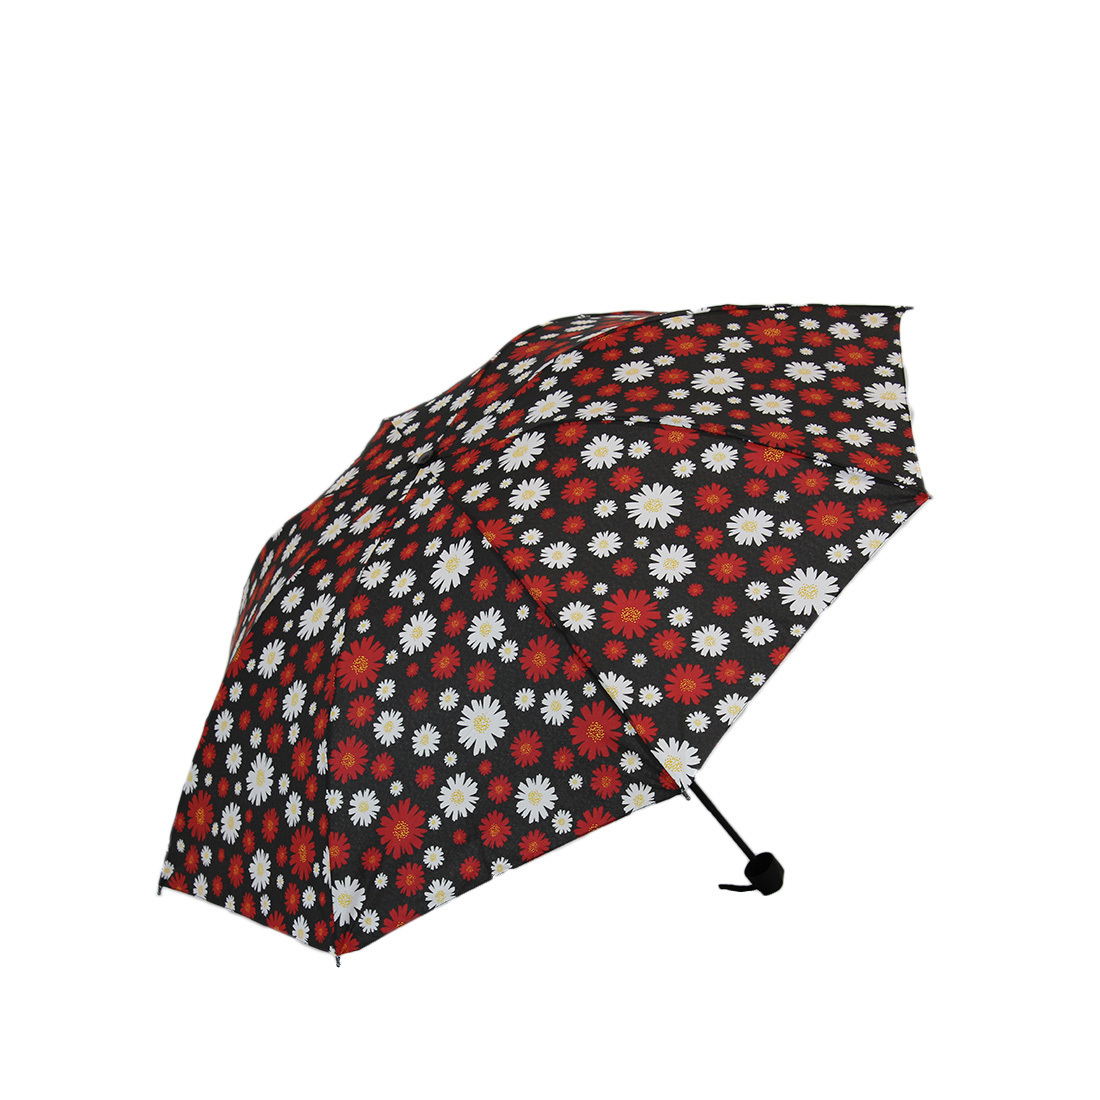 * Flower design umbrella